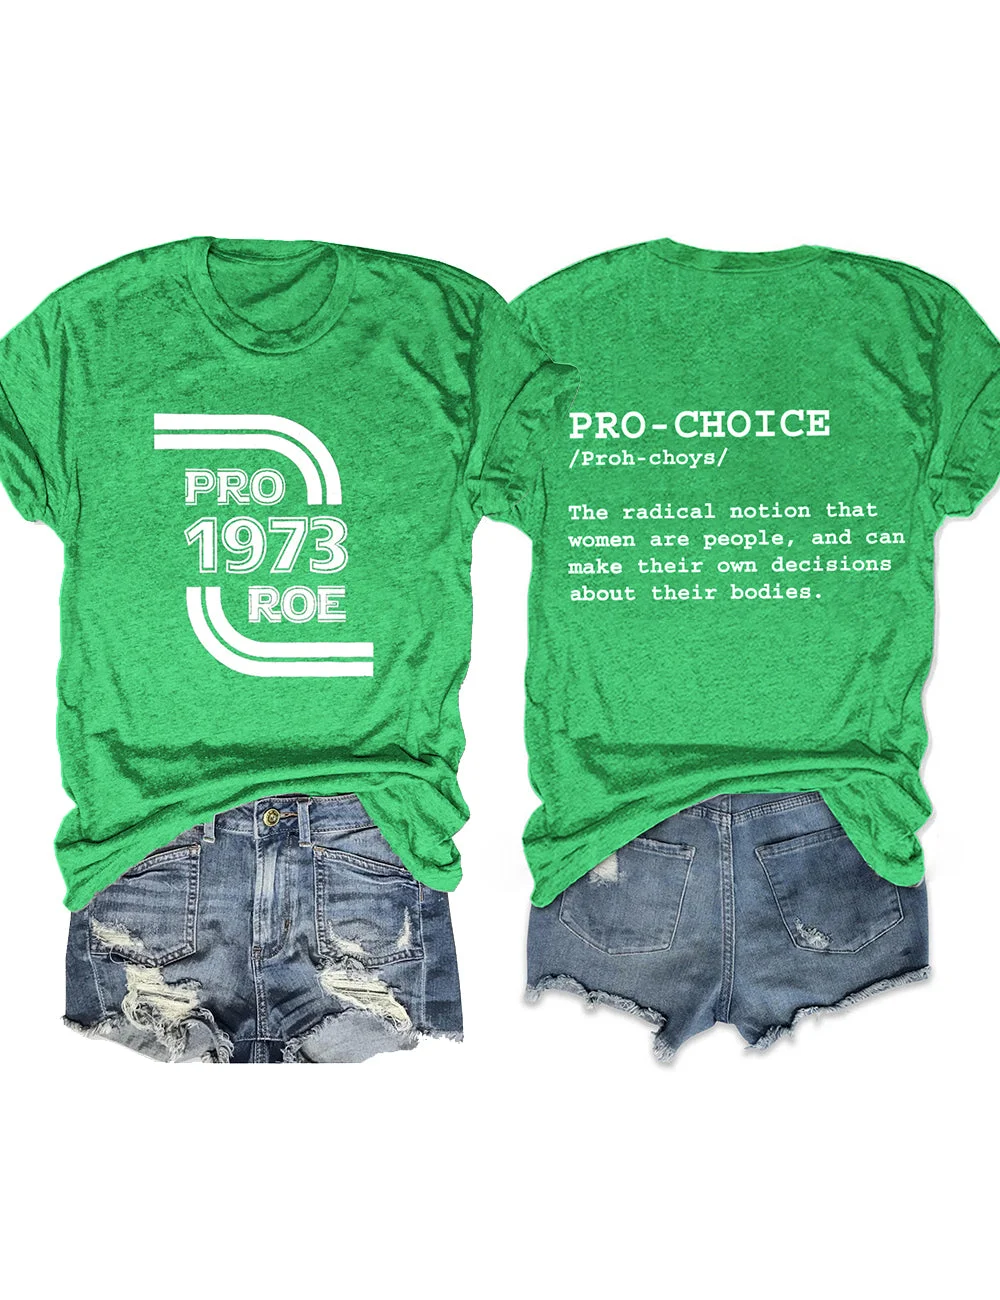 Pro Roe Pro-Choice Green Tee